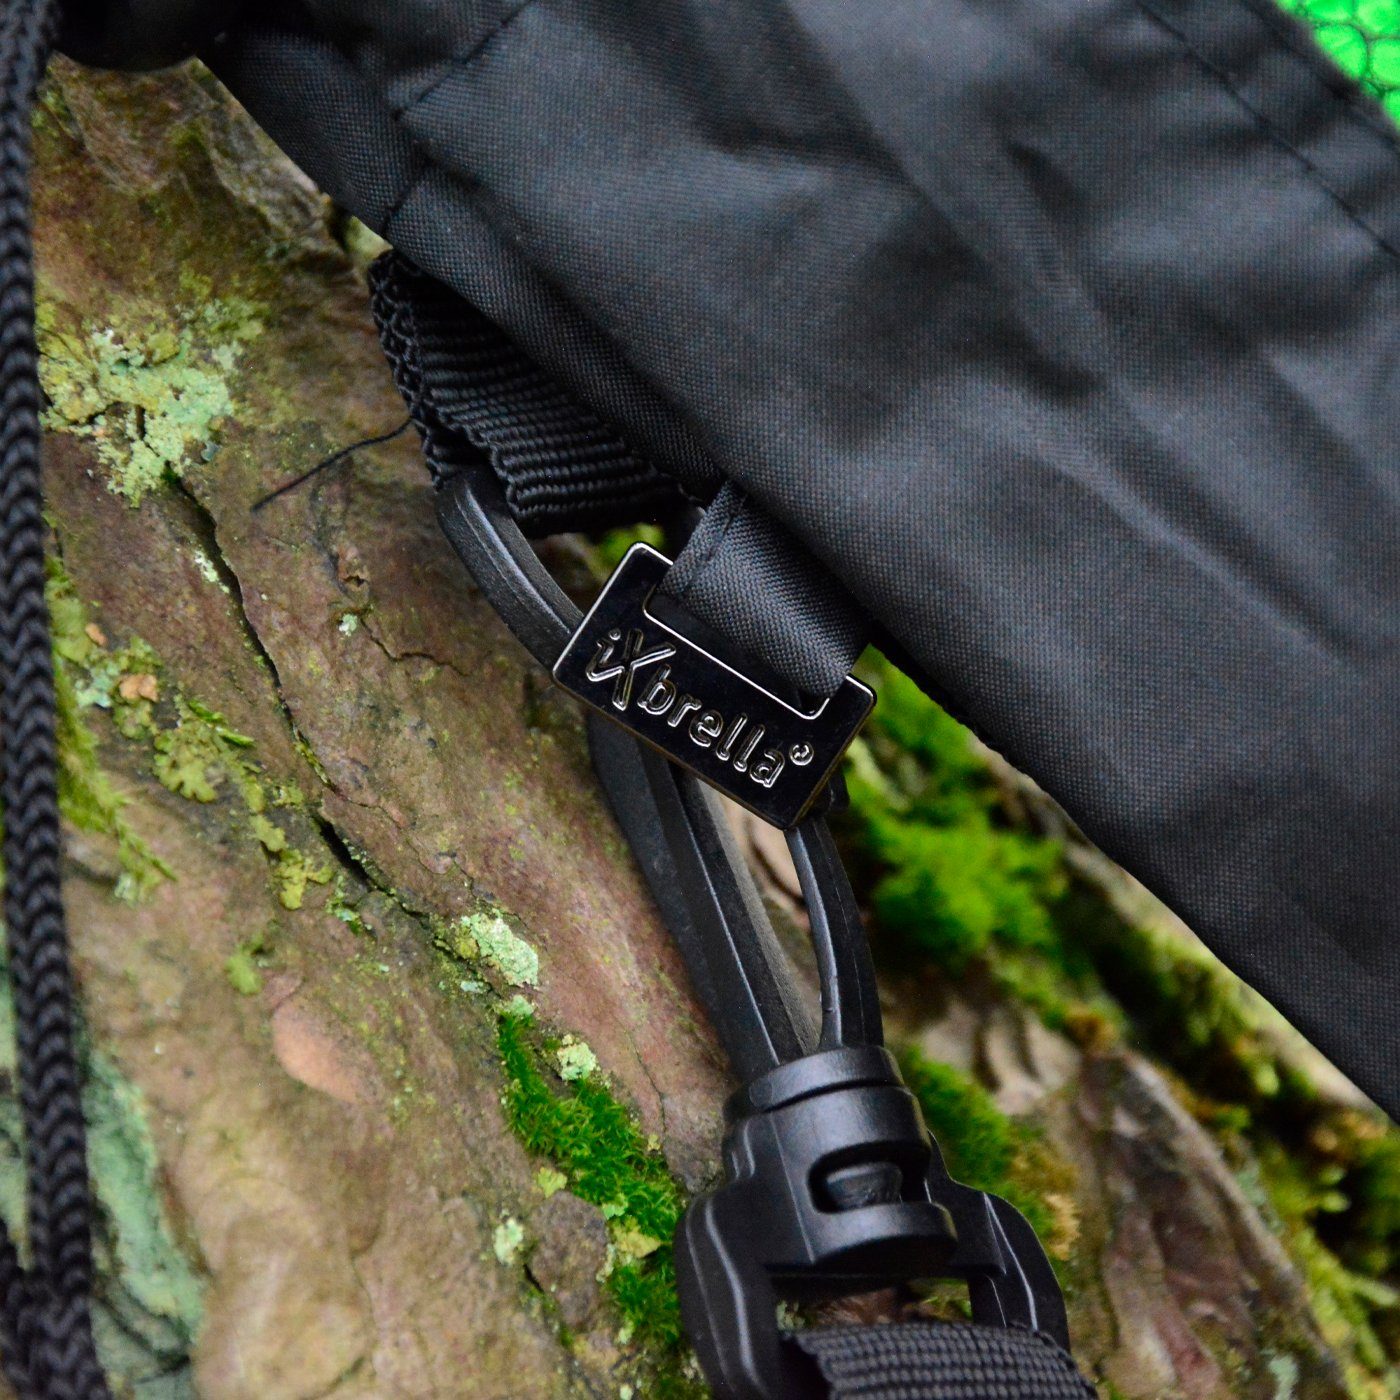 bunt XXL Taschenregenschirm iX-brella 124cm mit Golf-Taschenschirm Umhängetasche, Dach-Durchmesser mit riesigem Trekking